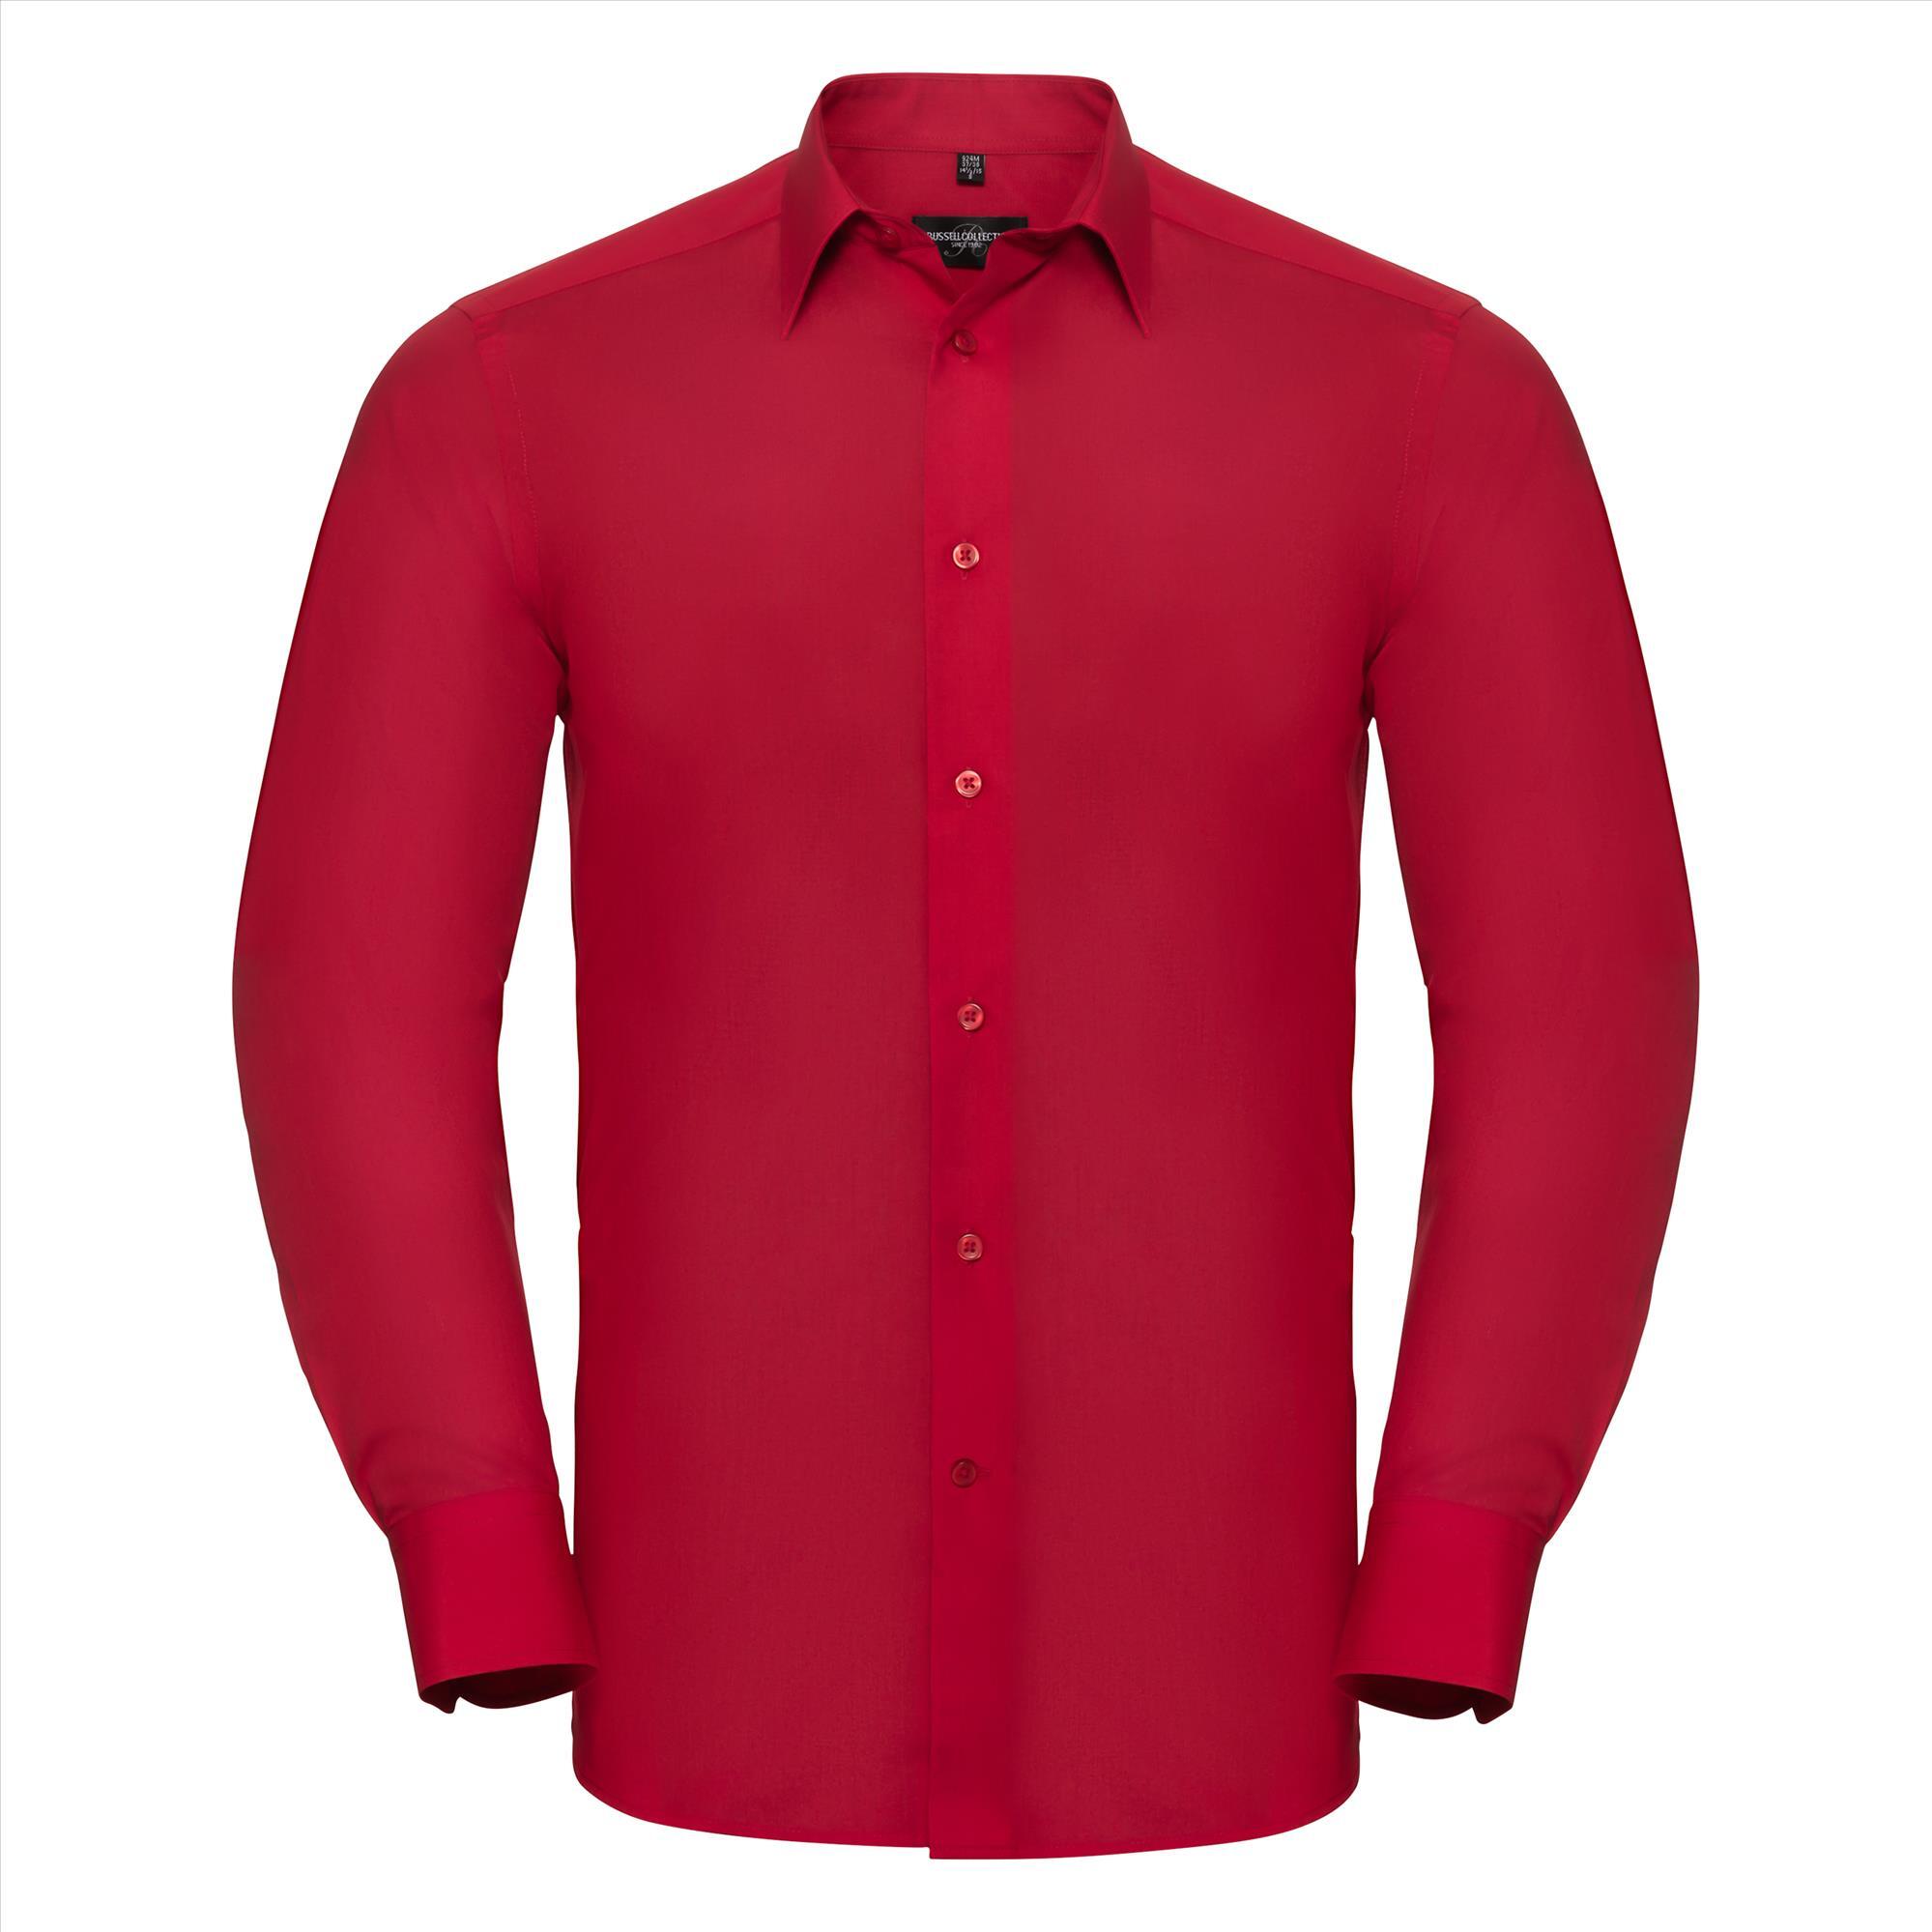 Heren overhemd rood te bedrukken met bedrijslogo te personaliseren